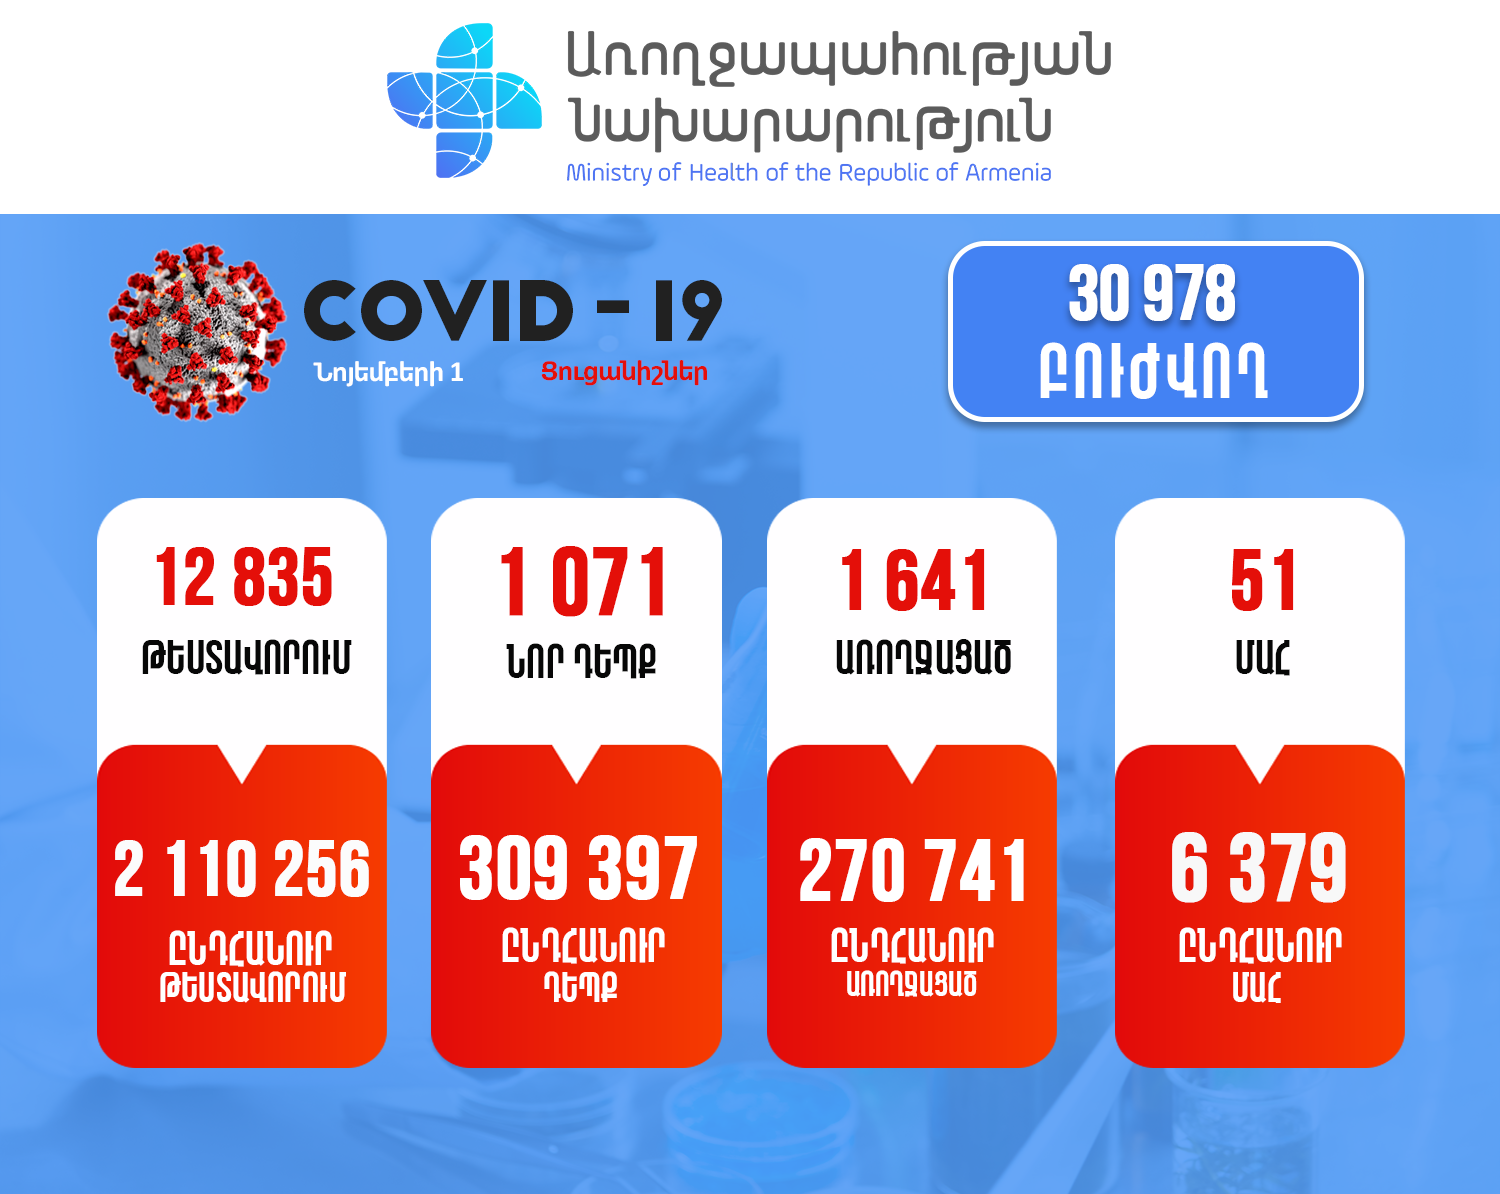 Կորոնավիրուսային հիվանդության իրավիճակը Հայաստանում. մեկօրյա մահերի թիվը դարձյալ 50-ից ավելի է